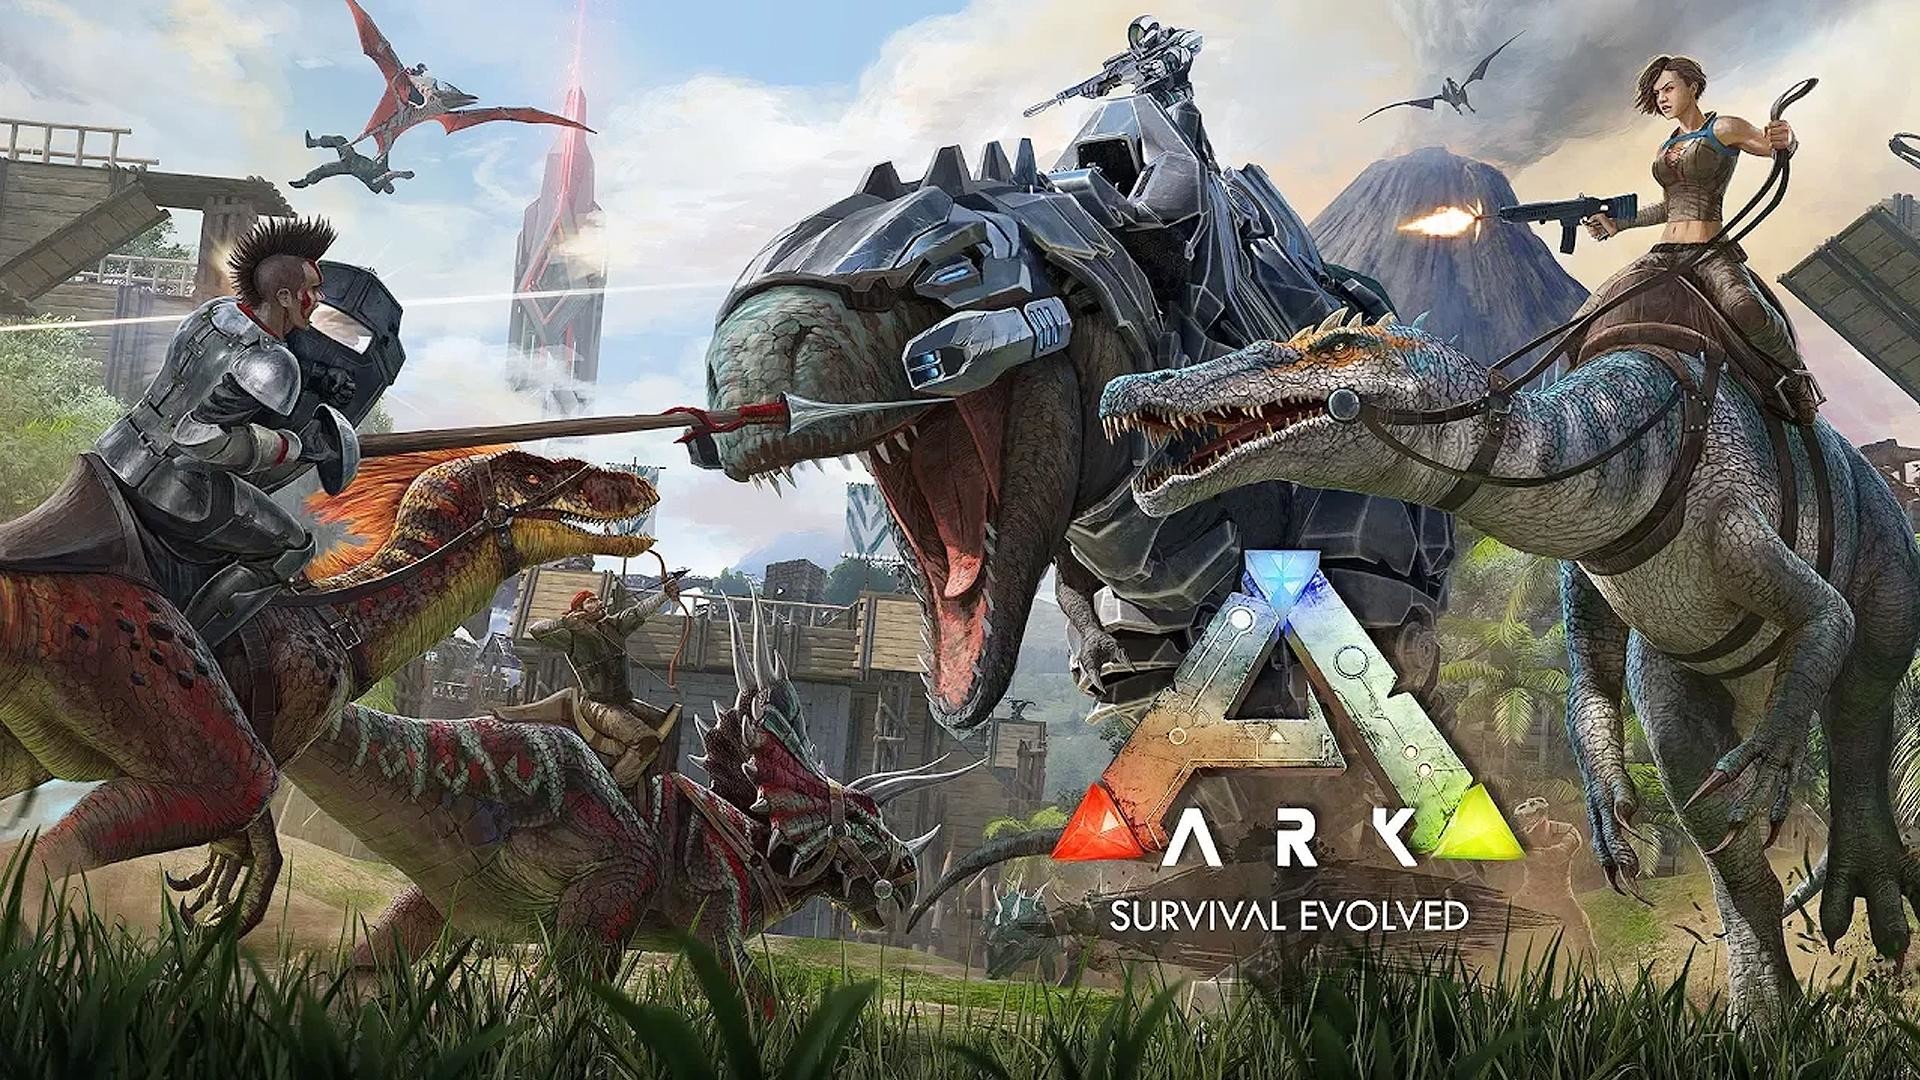 arca supervivencia papel pintado evolucionado,juego de acción y aventura,juego de pc,juegos,software de videojuegos,cg artwork